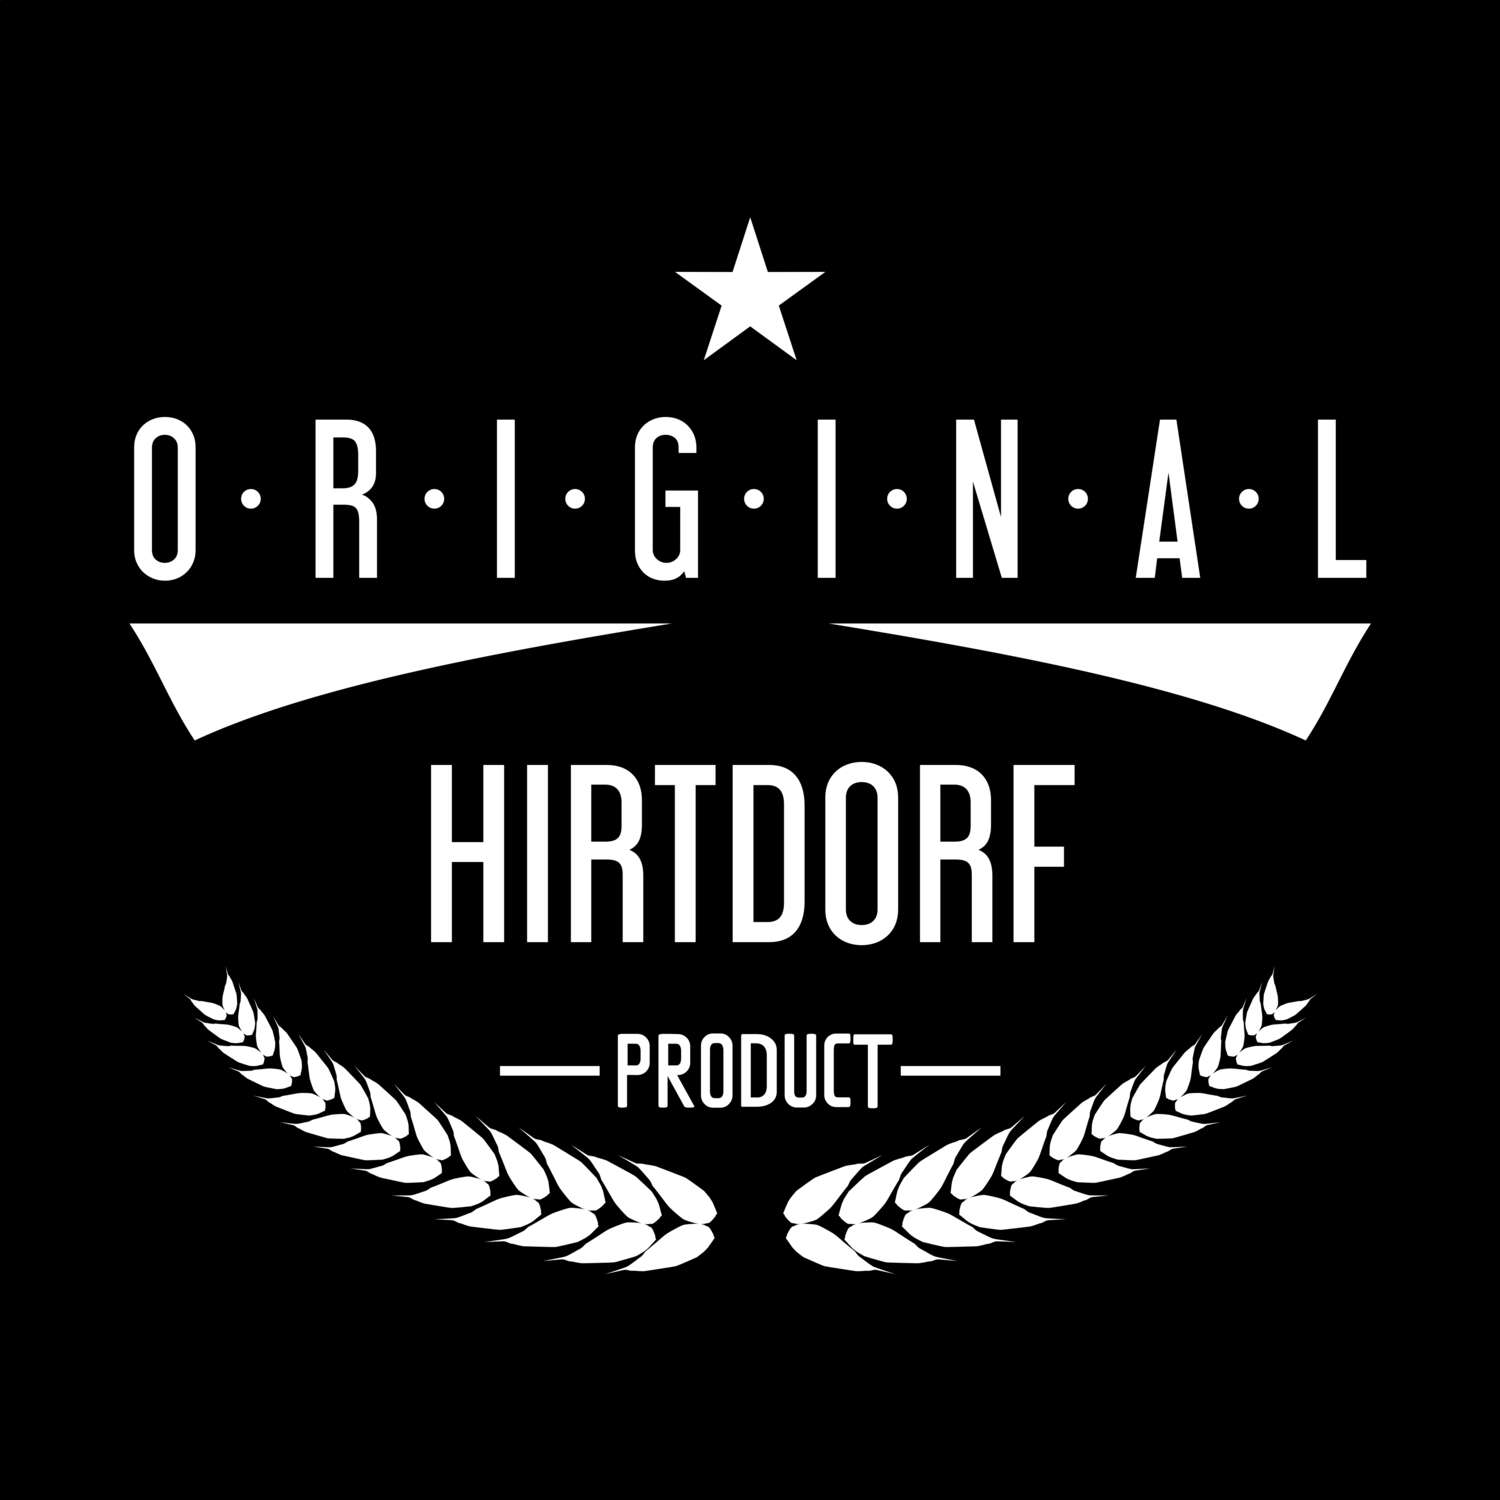 Hirtdorf T-Shirt »Original Product«